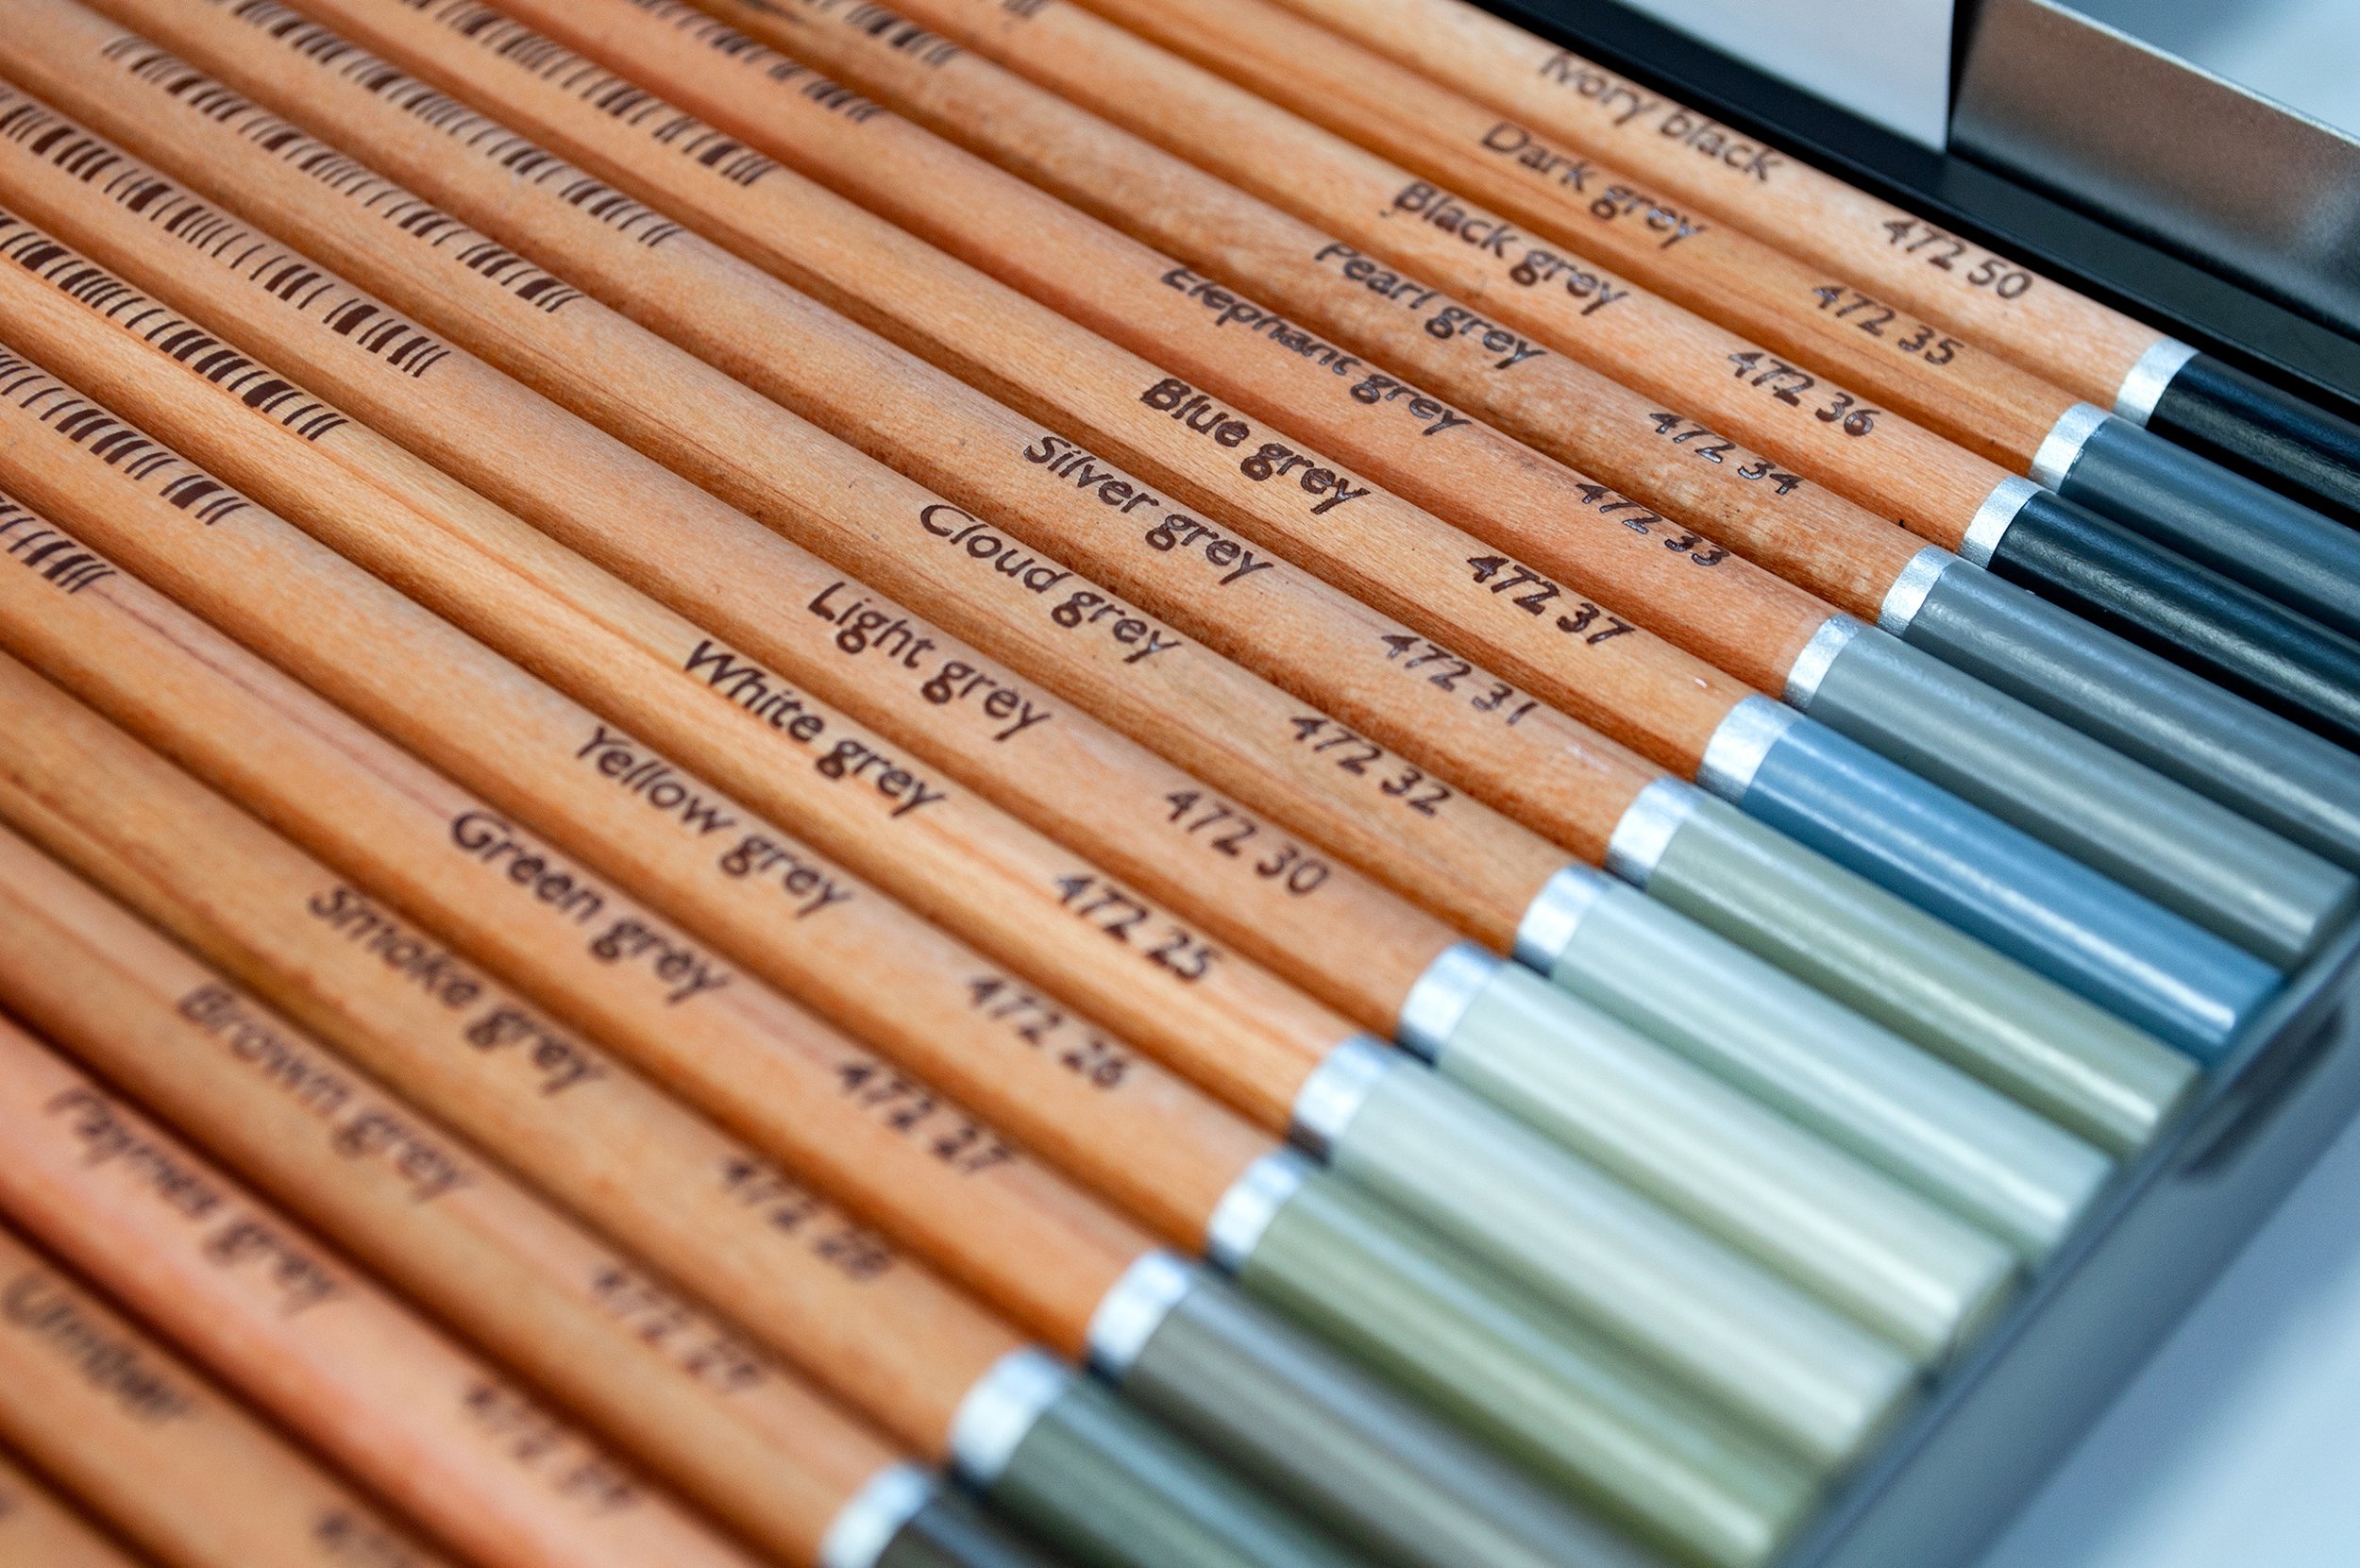 Cretacolor Fine Art Pastel Pencil Set of 36 Colors